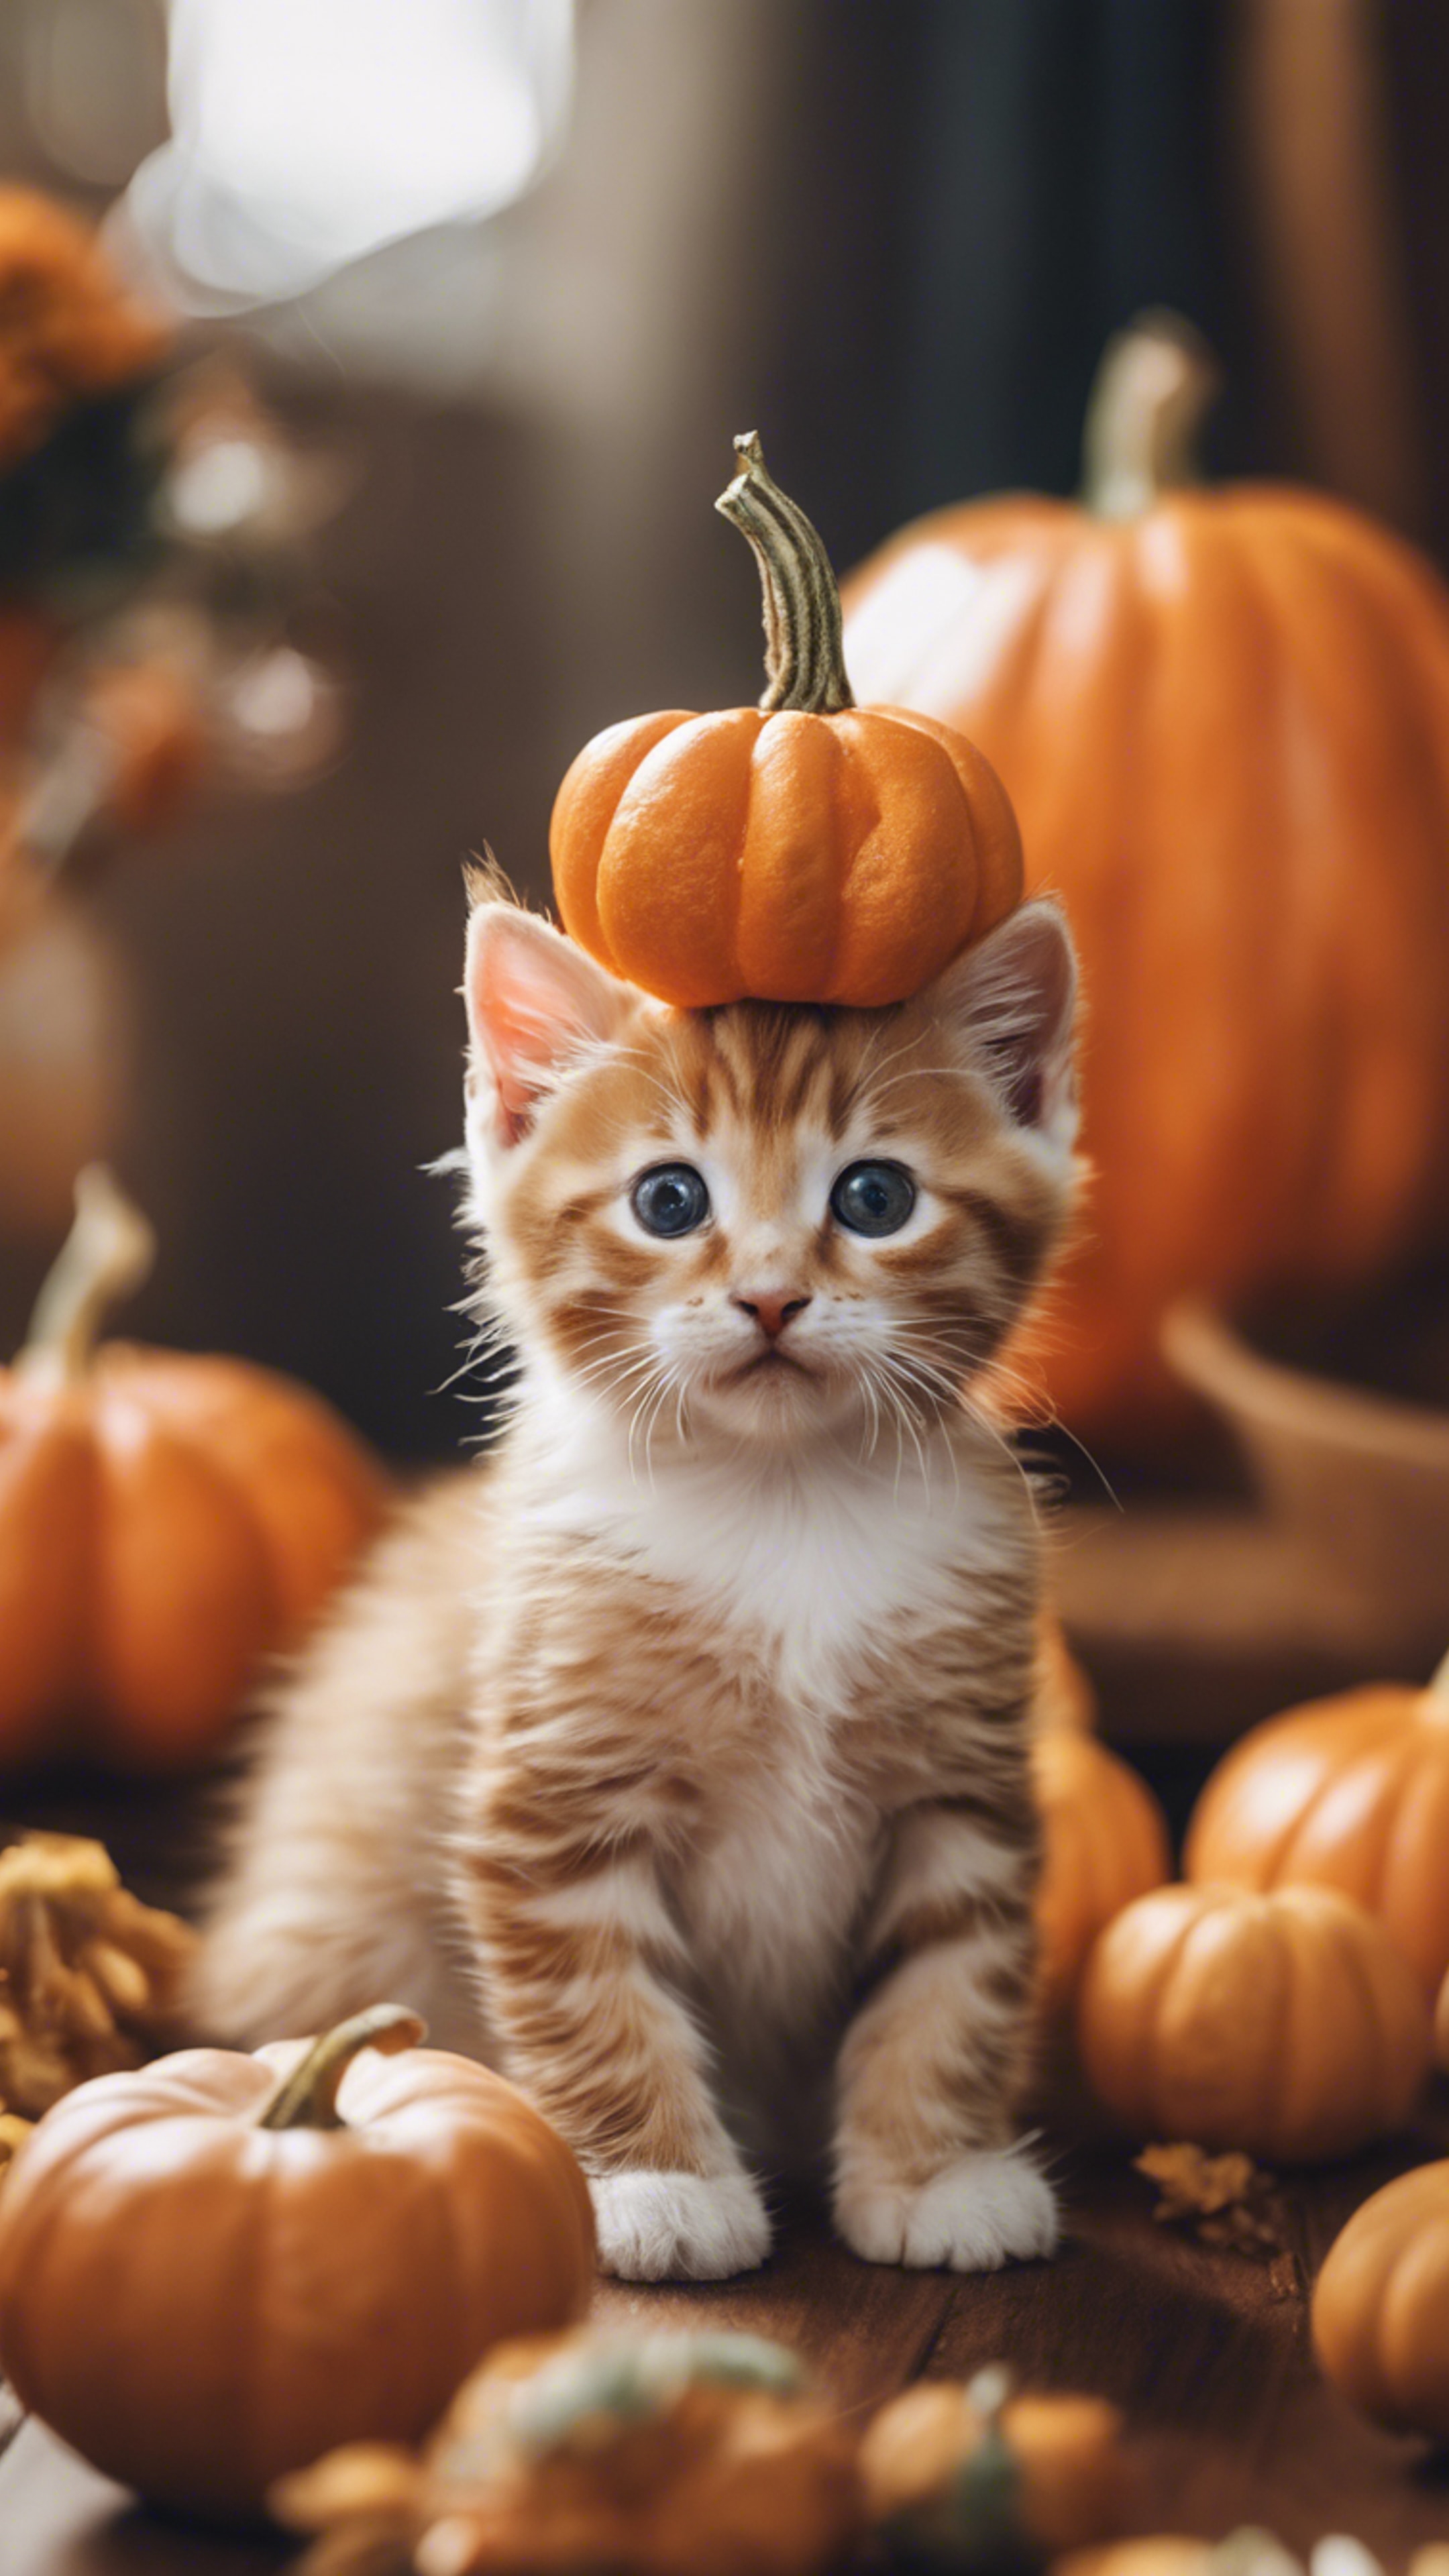 An orange tabby kitten dressed up as a tiny pumpkin for Halloween festivities. Divar kağızı[a5205dadd28d41bcbdef]